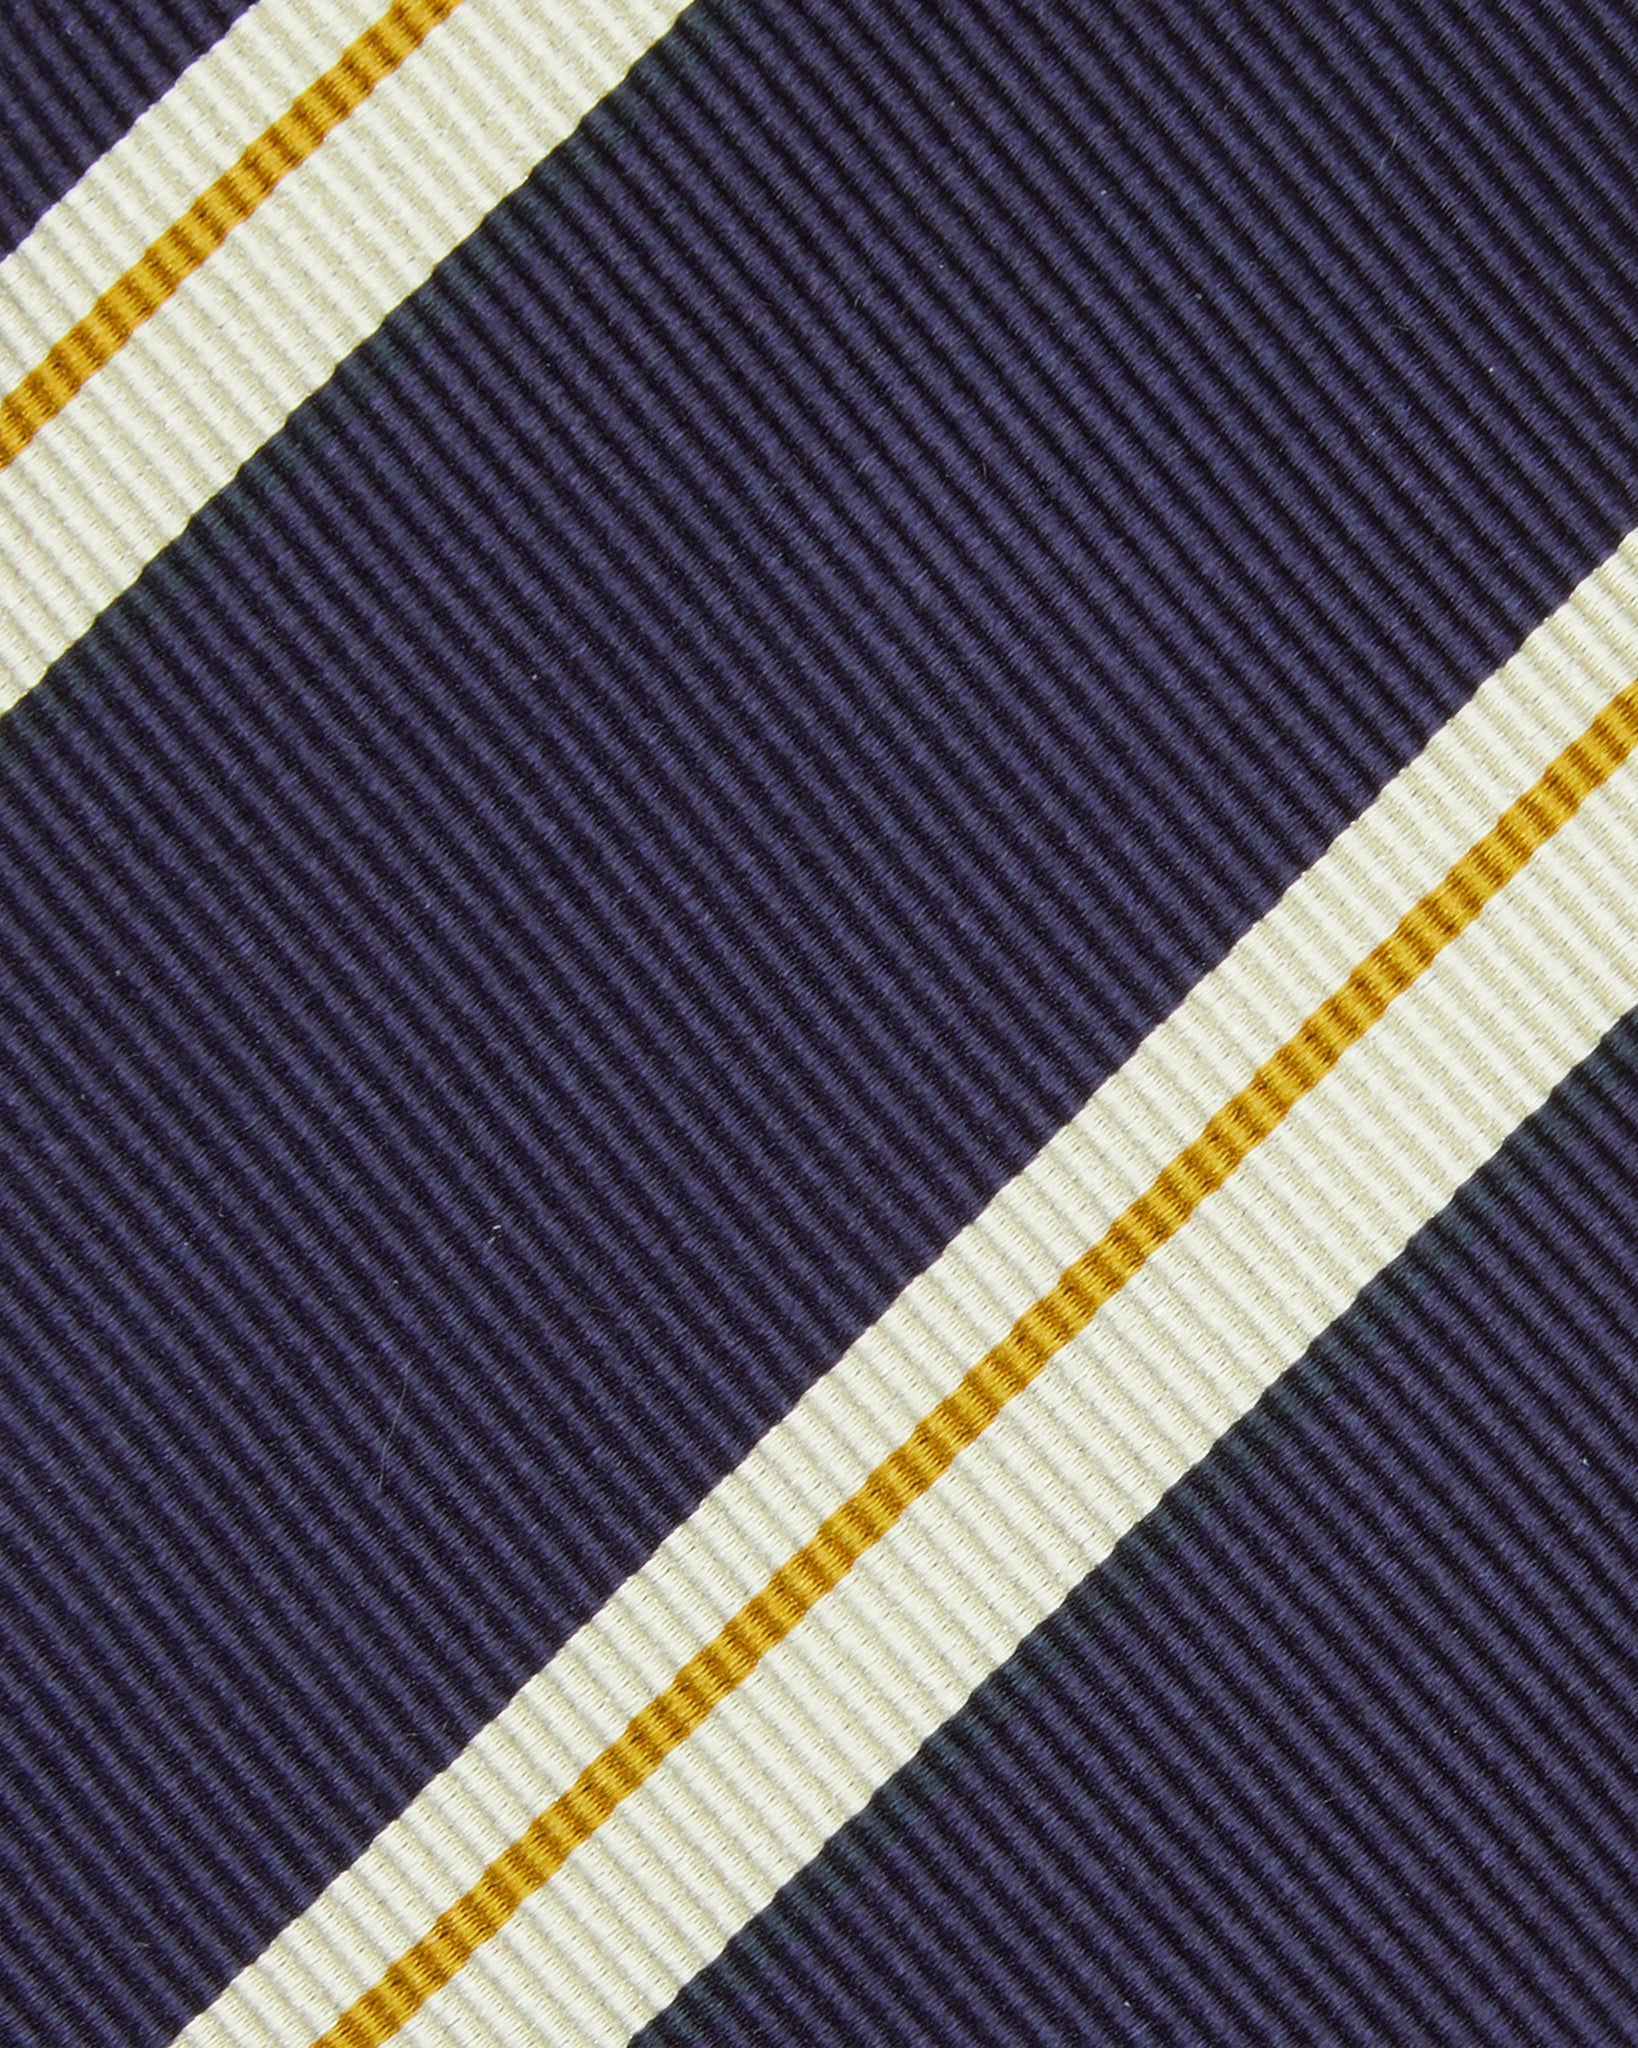 Silk Woven Tie in Navy/Bone/Yellow Stripe